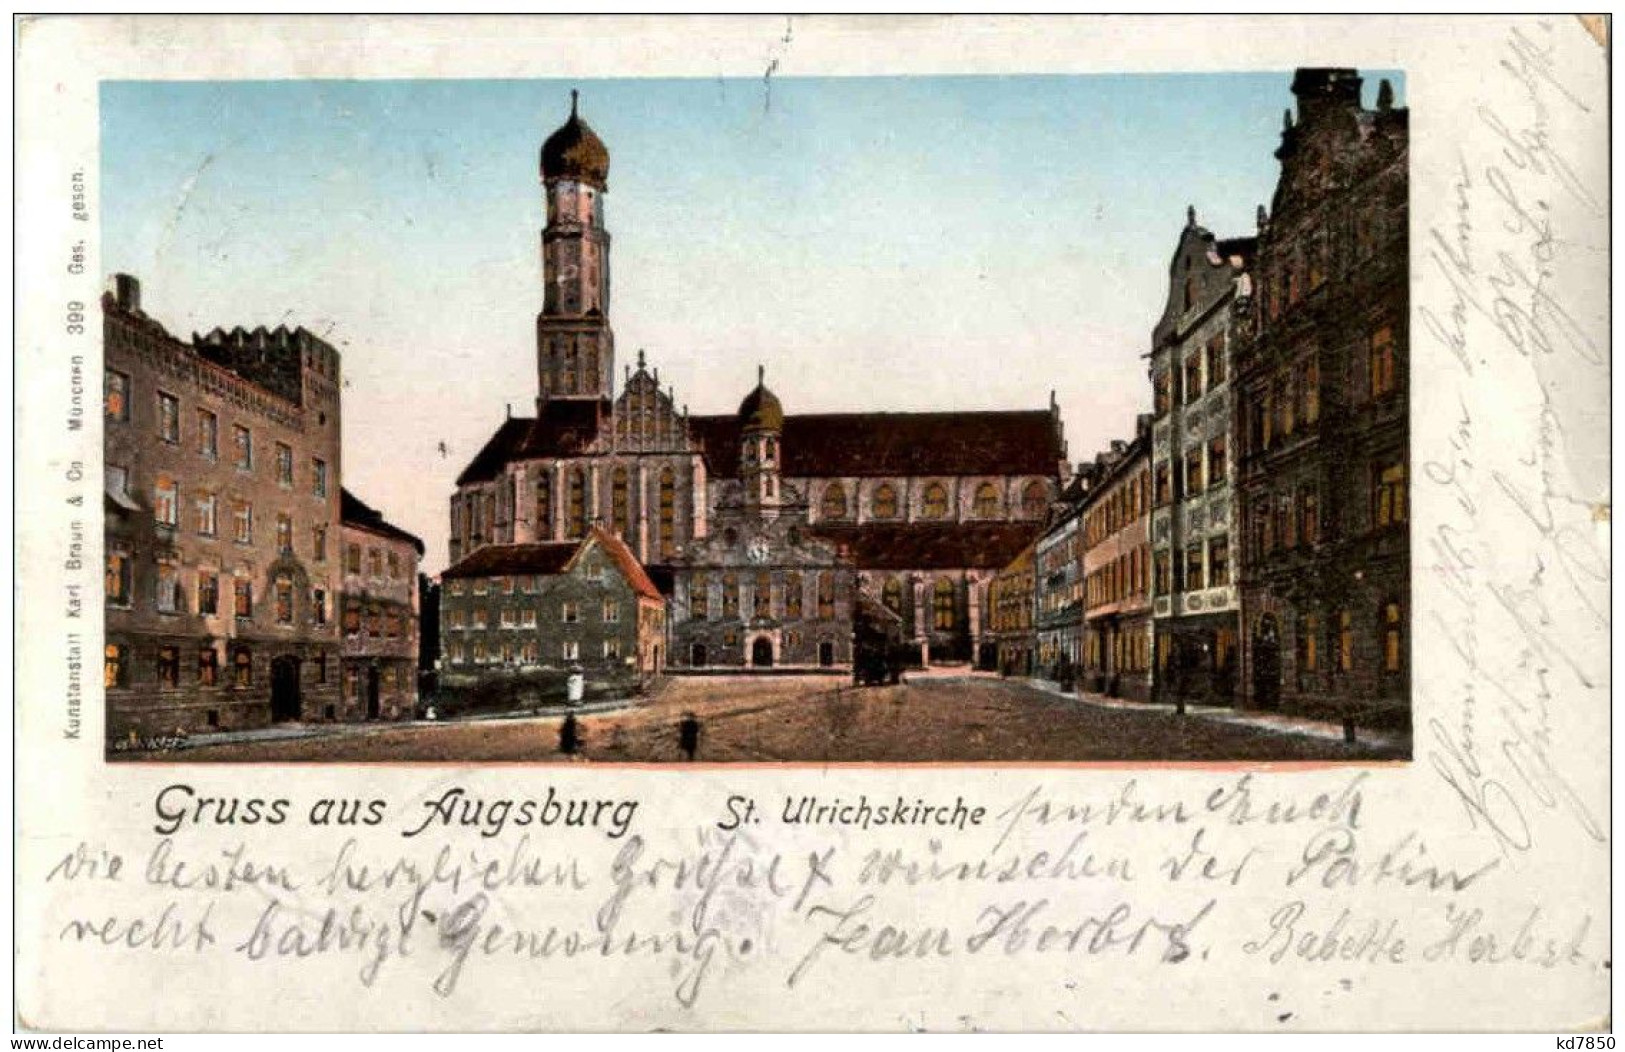 Gruss Aus Augsburg - St. Ulrichskirche - Karl Braun Verlag - Augsburg